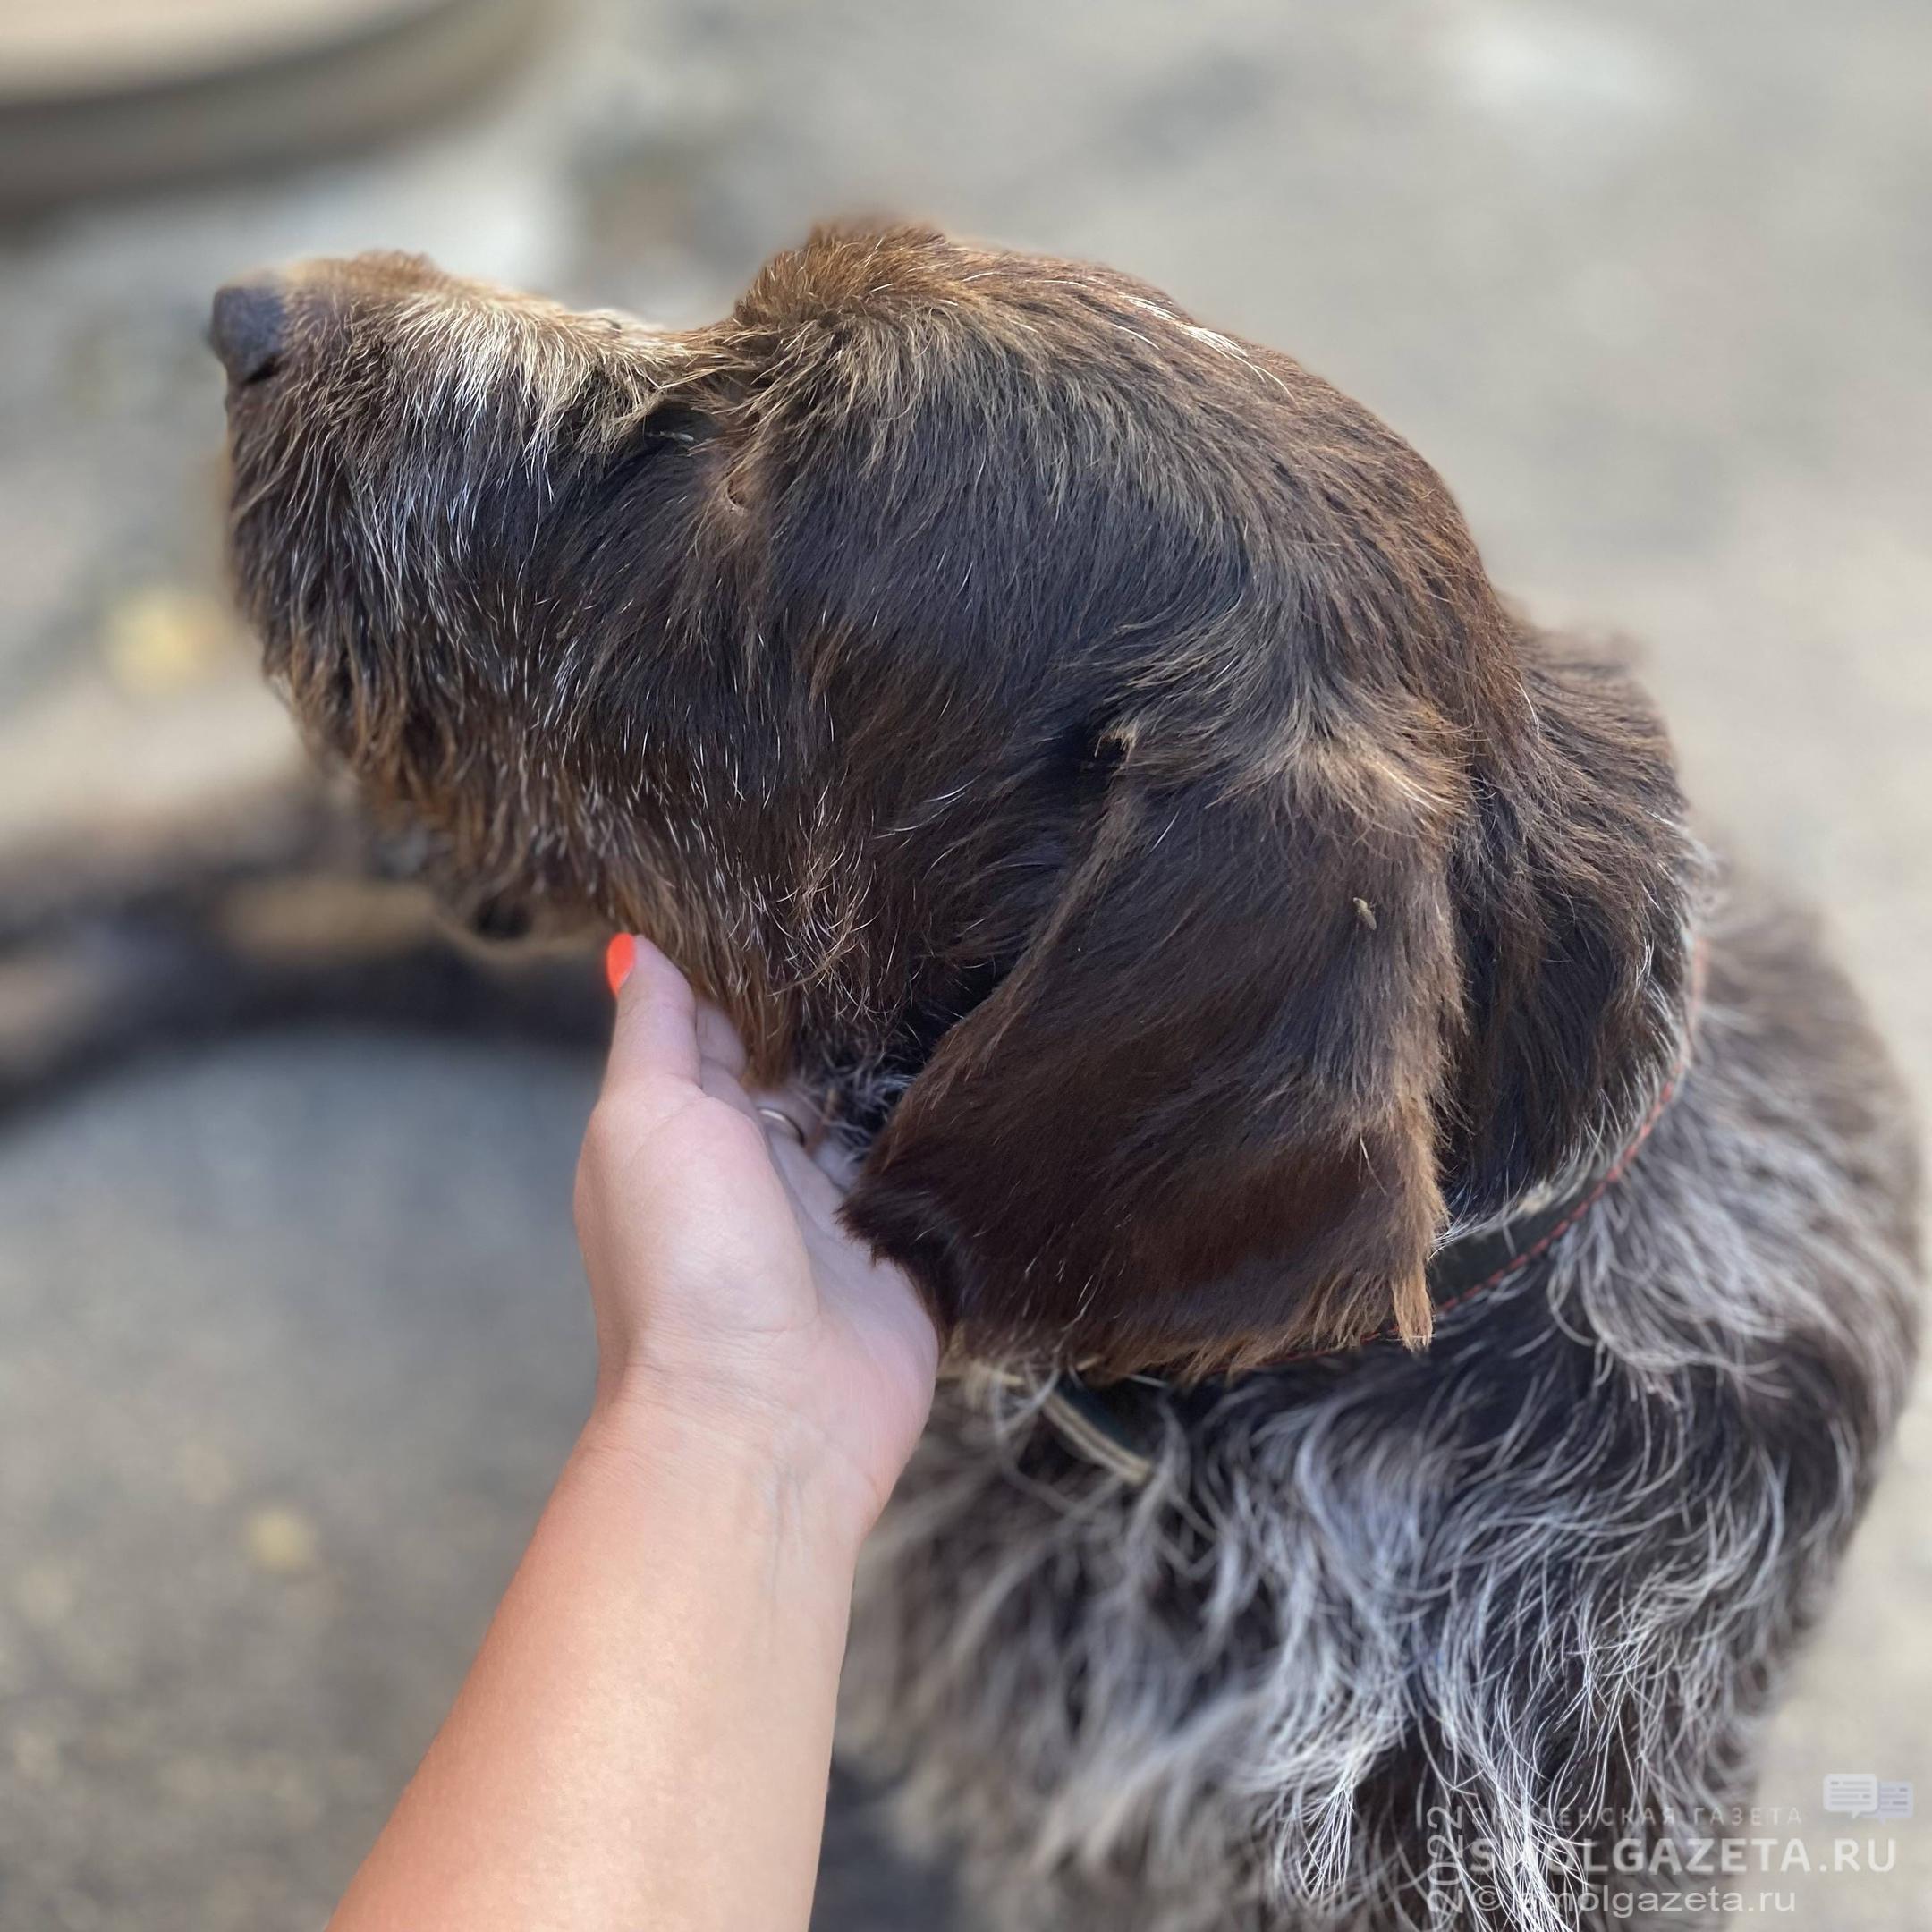 Жительнице Ярцева грозит срок за жестокое обращение с собакой